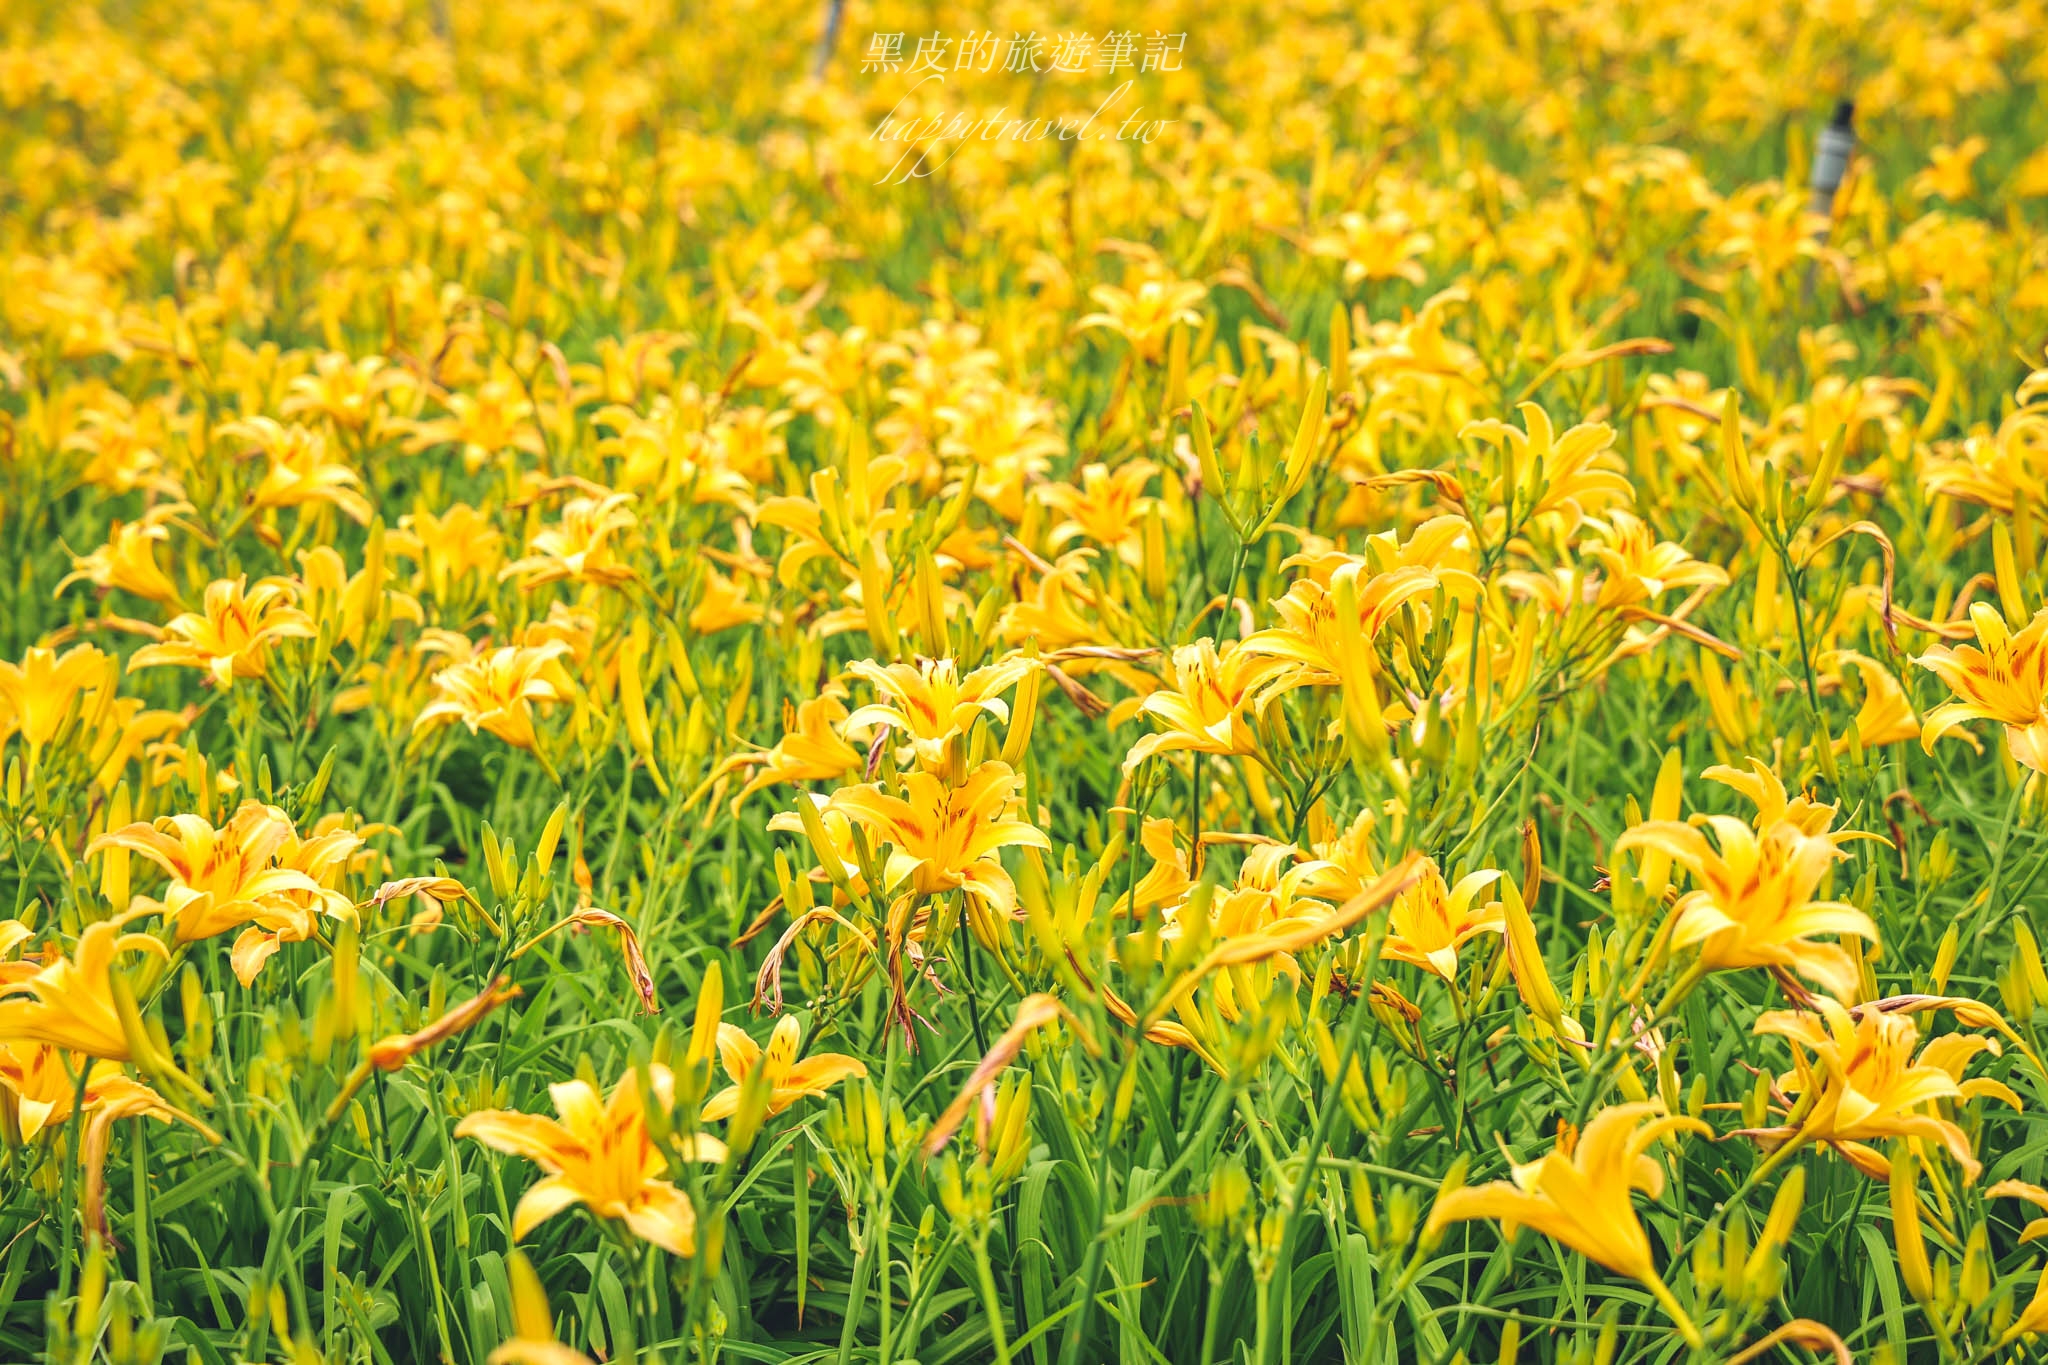 桃園景點。百吉休閒農場金針花｜北台灣面積最大的金針花海，更有忘憂山丘的美名，快走進這片金黃花毯，大溪景點/大溪花海/桃園金針花